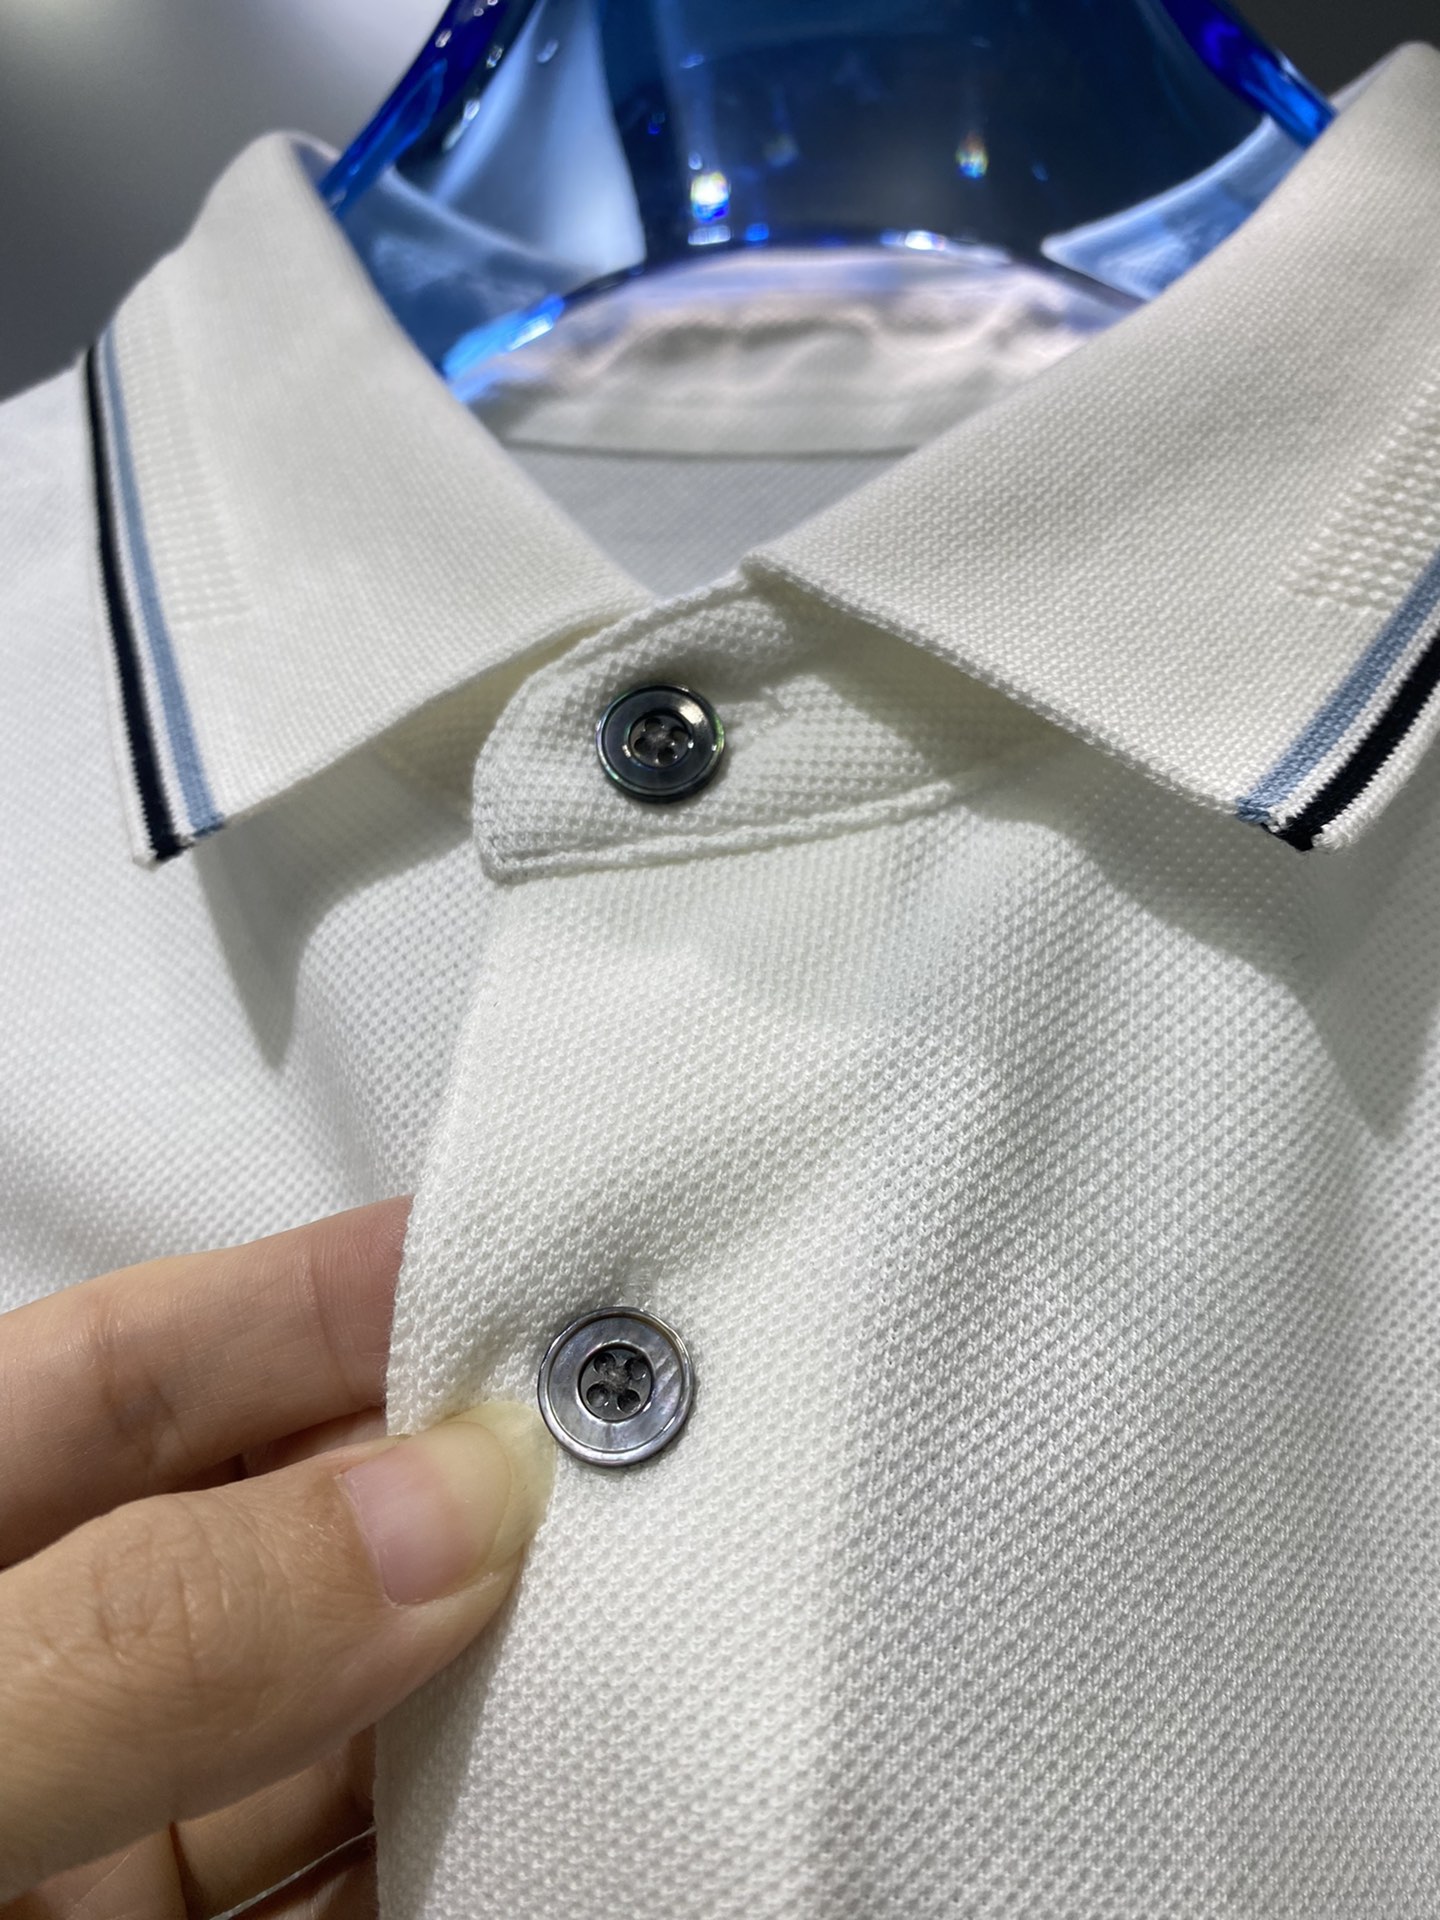 #PD夏季新款短袖T恤Polo客供定制珠地面料简单时尚款超级好看！简单大方的款式！满满的高级感四季可穿颜